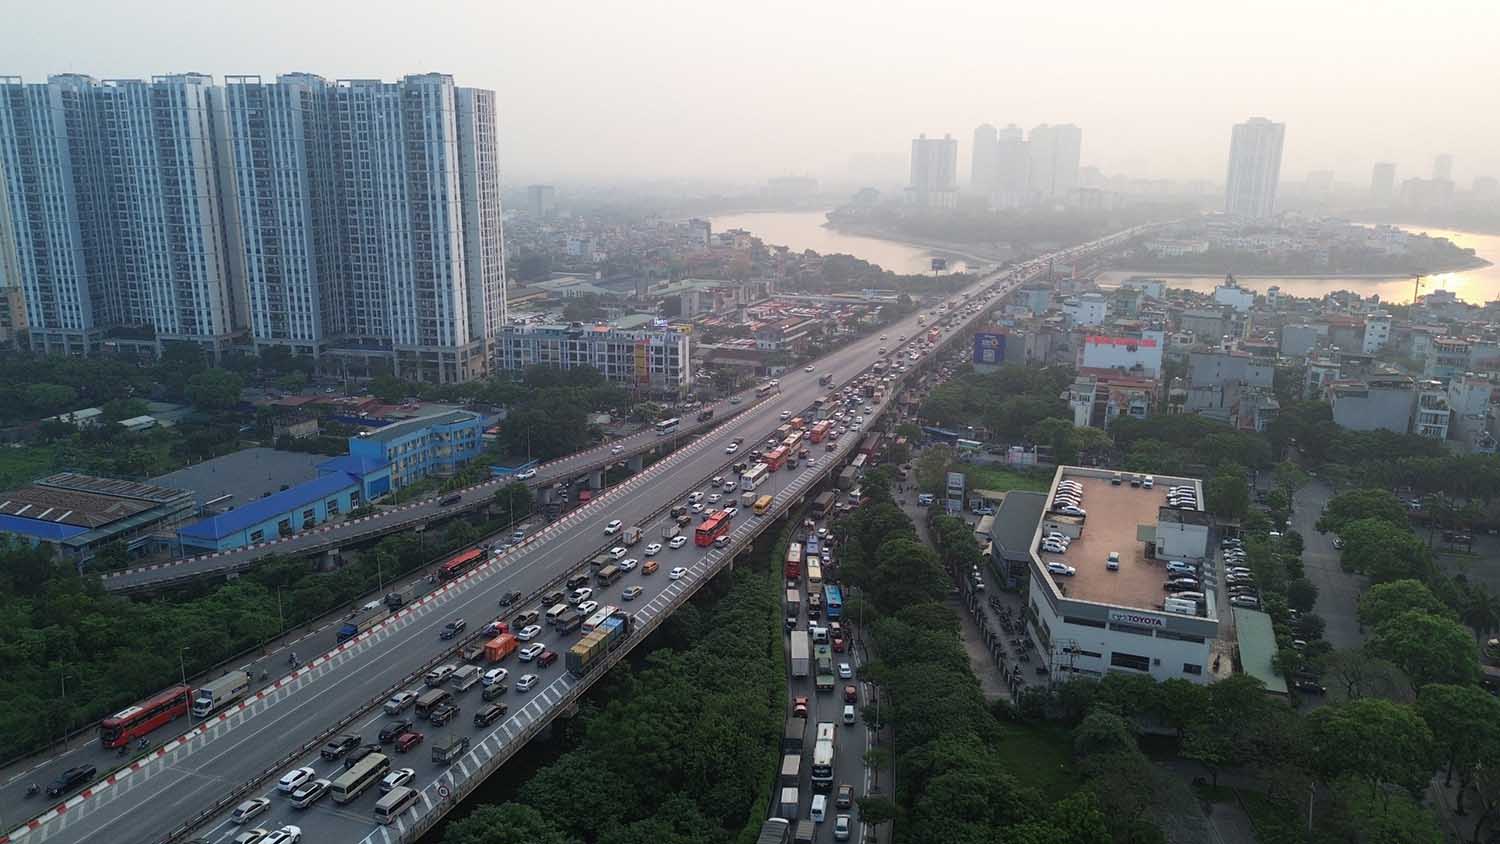 Trên đường Kinh Dương Vương đoạn vòng xoay An Lạc, quận Bình Tân, cửa ngõ đi các tỉnh miền Tây, hàng nghìn xe ùn ứ lúc 16h.